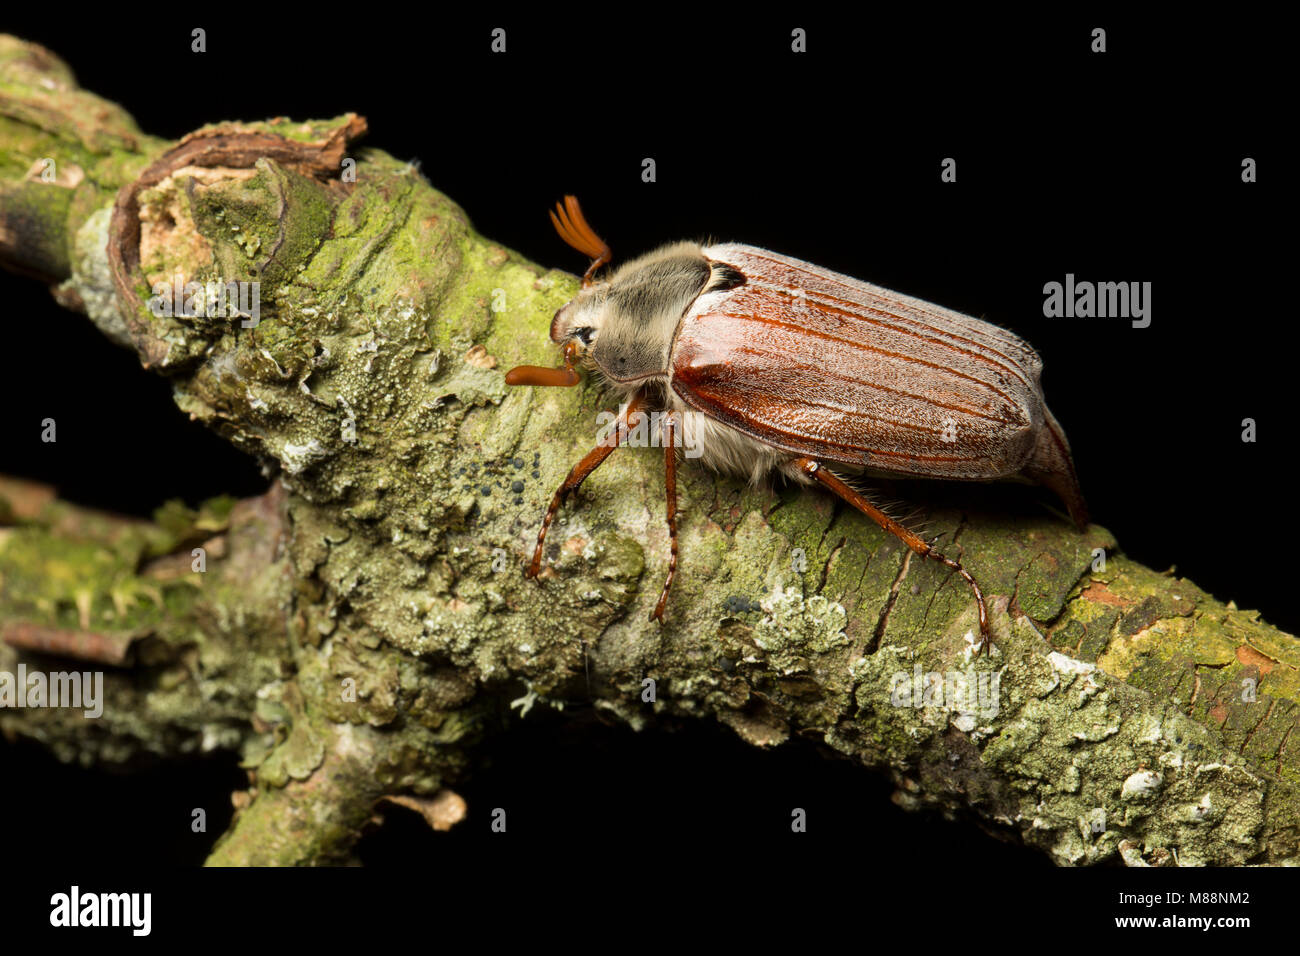 Ein Maikäfer Käfer Melolontha melolontha, North Dorset England UK GB die angezogen wurde Lichter zu Haus. Studio Bild auf schwarzem Hintergrund. Stockfoto